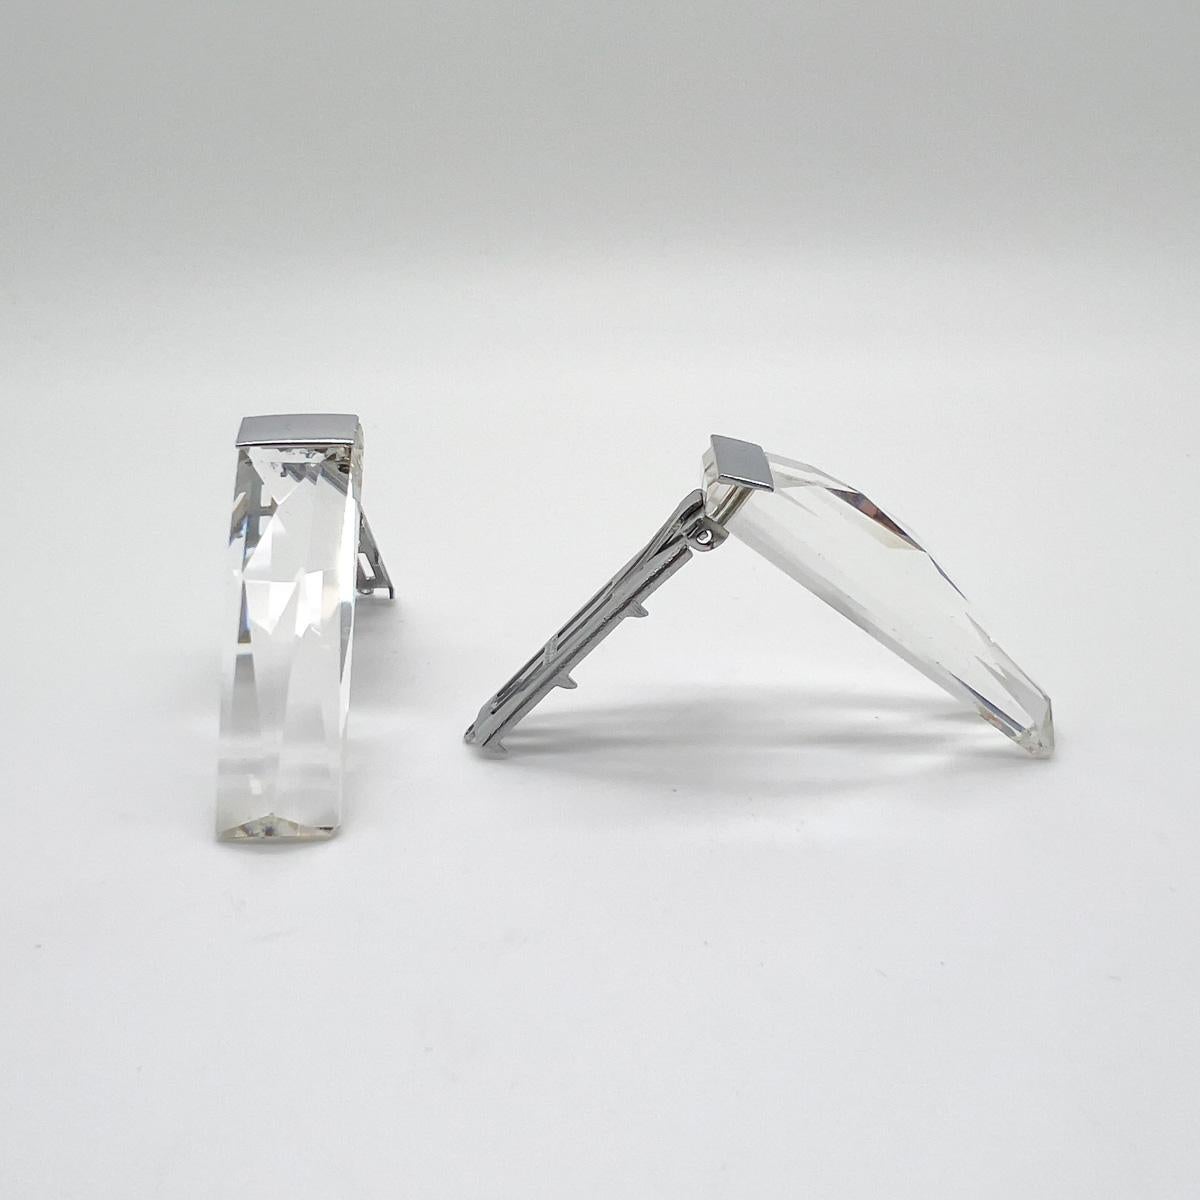 Ein Paar Kleiderspangen aus geschliffenem Kristall im Art-Déco-Stil, hergestellt in der Tschechoslowakei für den französischen Markt. Erlesene, hochwertige Kristalle in geometrischem Design mit rhodinierten oder verchromten Fassungen. Mühelos